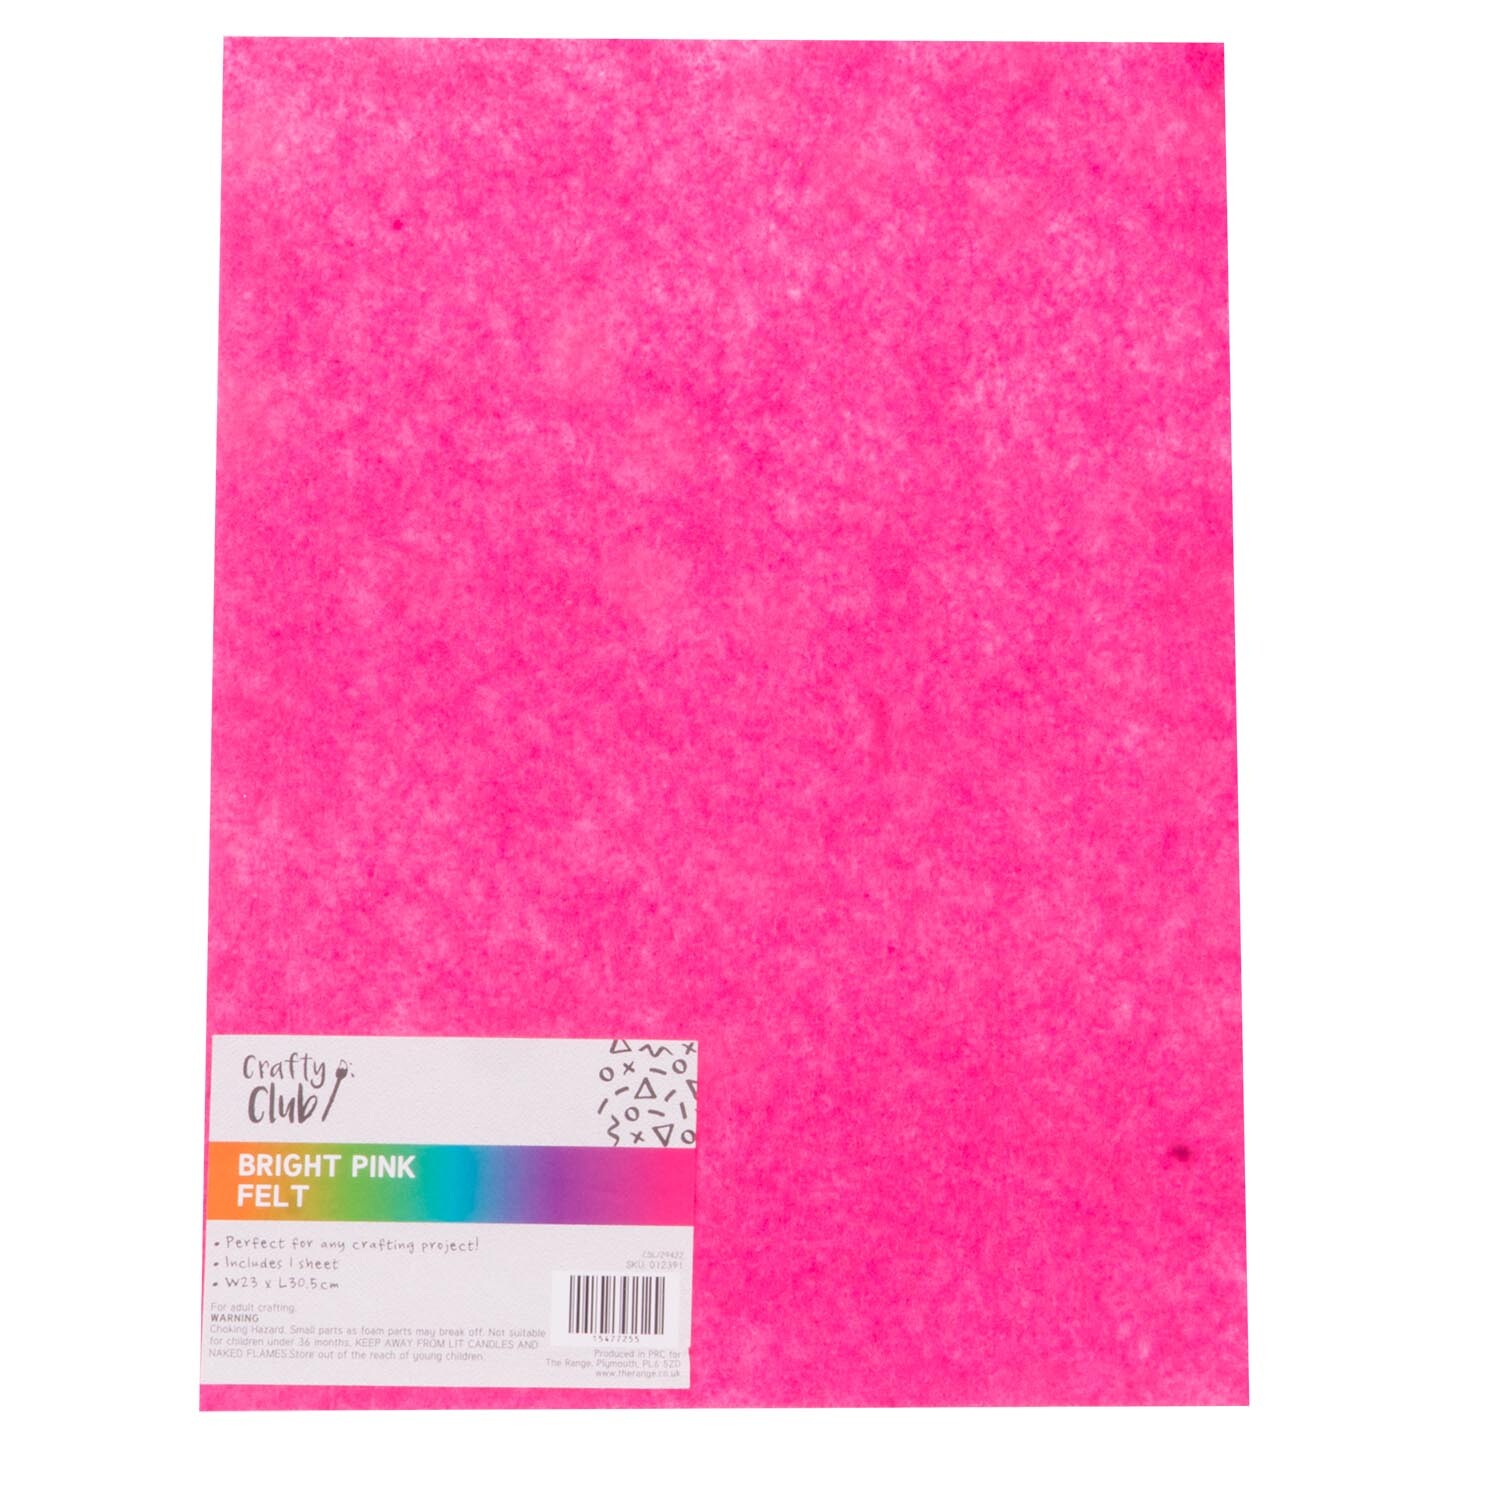 Crafty Club Felt Sheet - Bright Pink Image